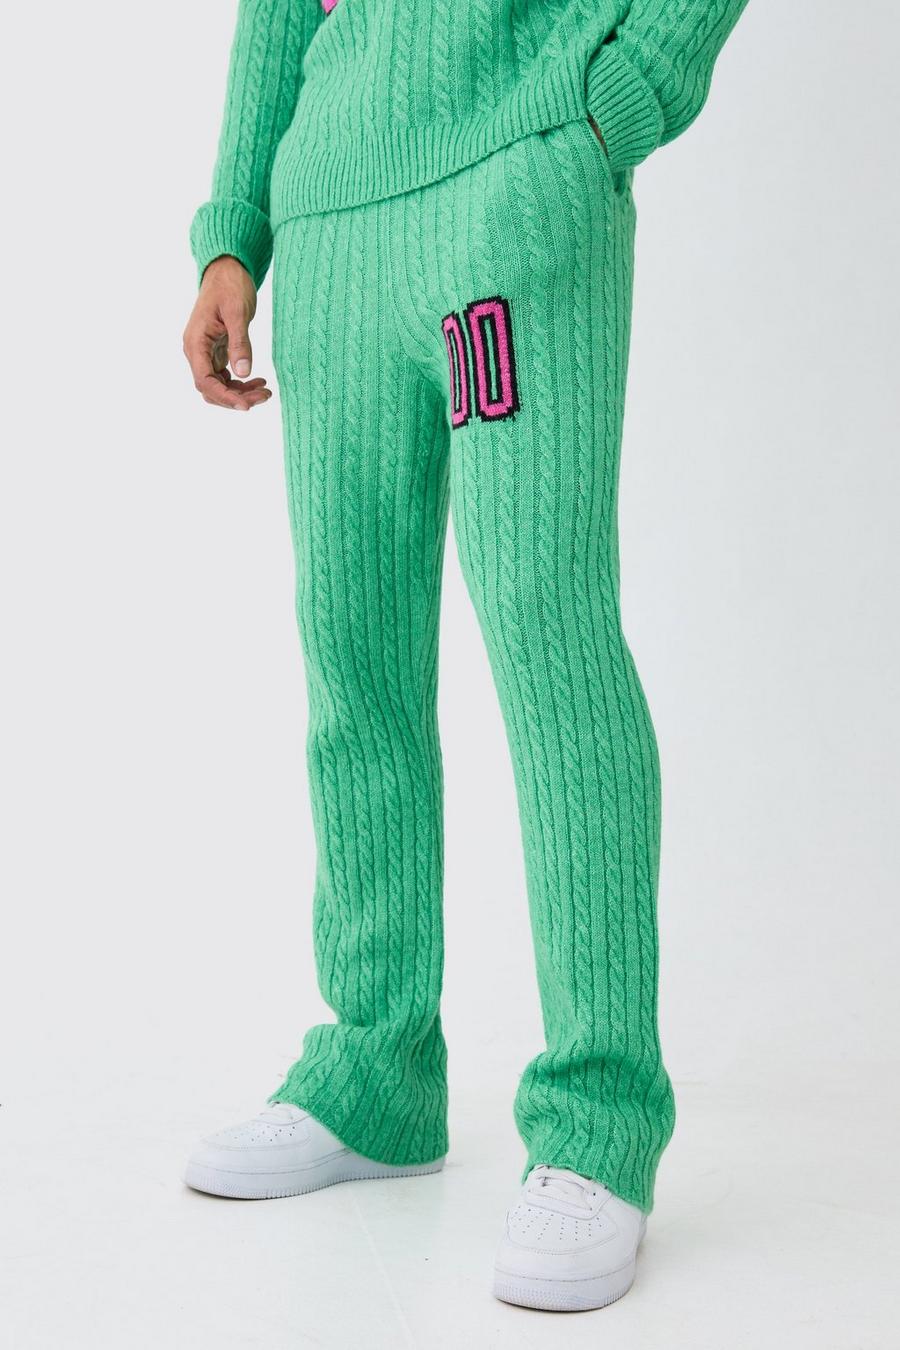 Pantaloni tuta a zampa Slim Fit in maglia intrecciata spazzolata, Green